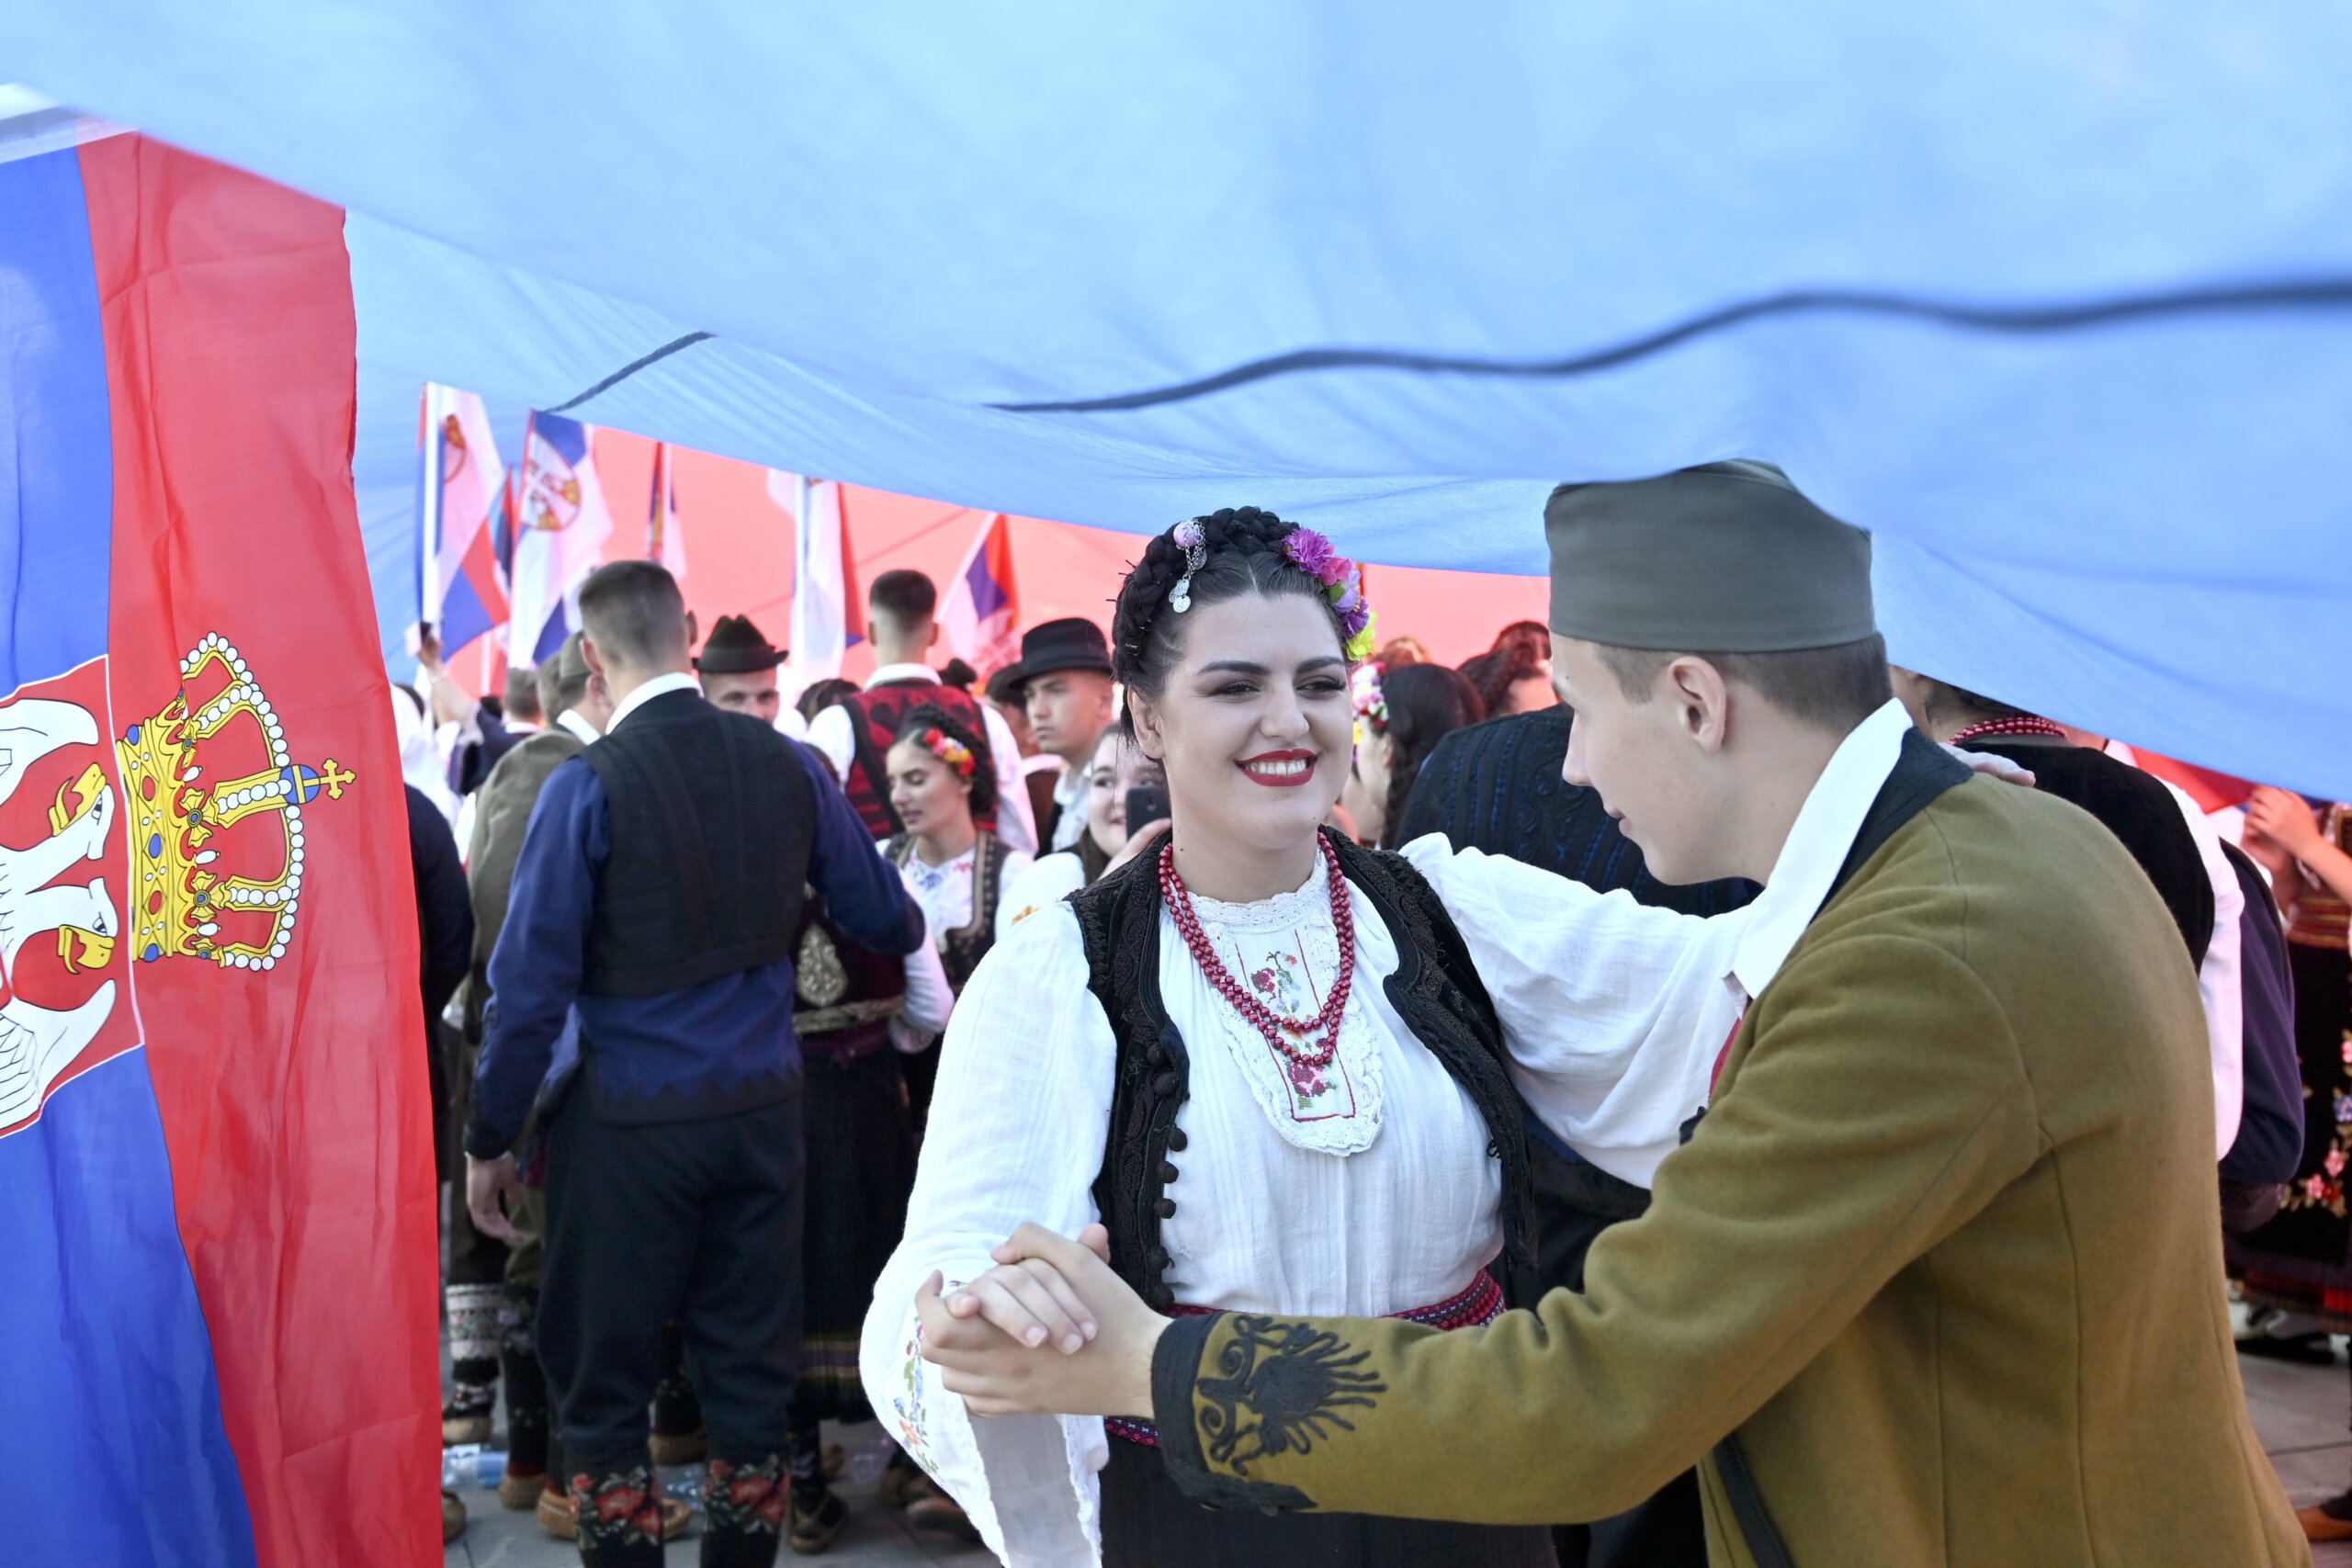 (FOTO) Kako je izgledala manifestacija "Jedan narod, jedan sabor - Srbija i Srpska" na Trgu republike u fotografijama? 3